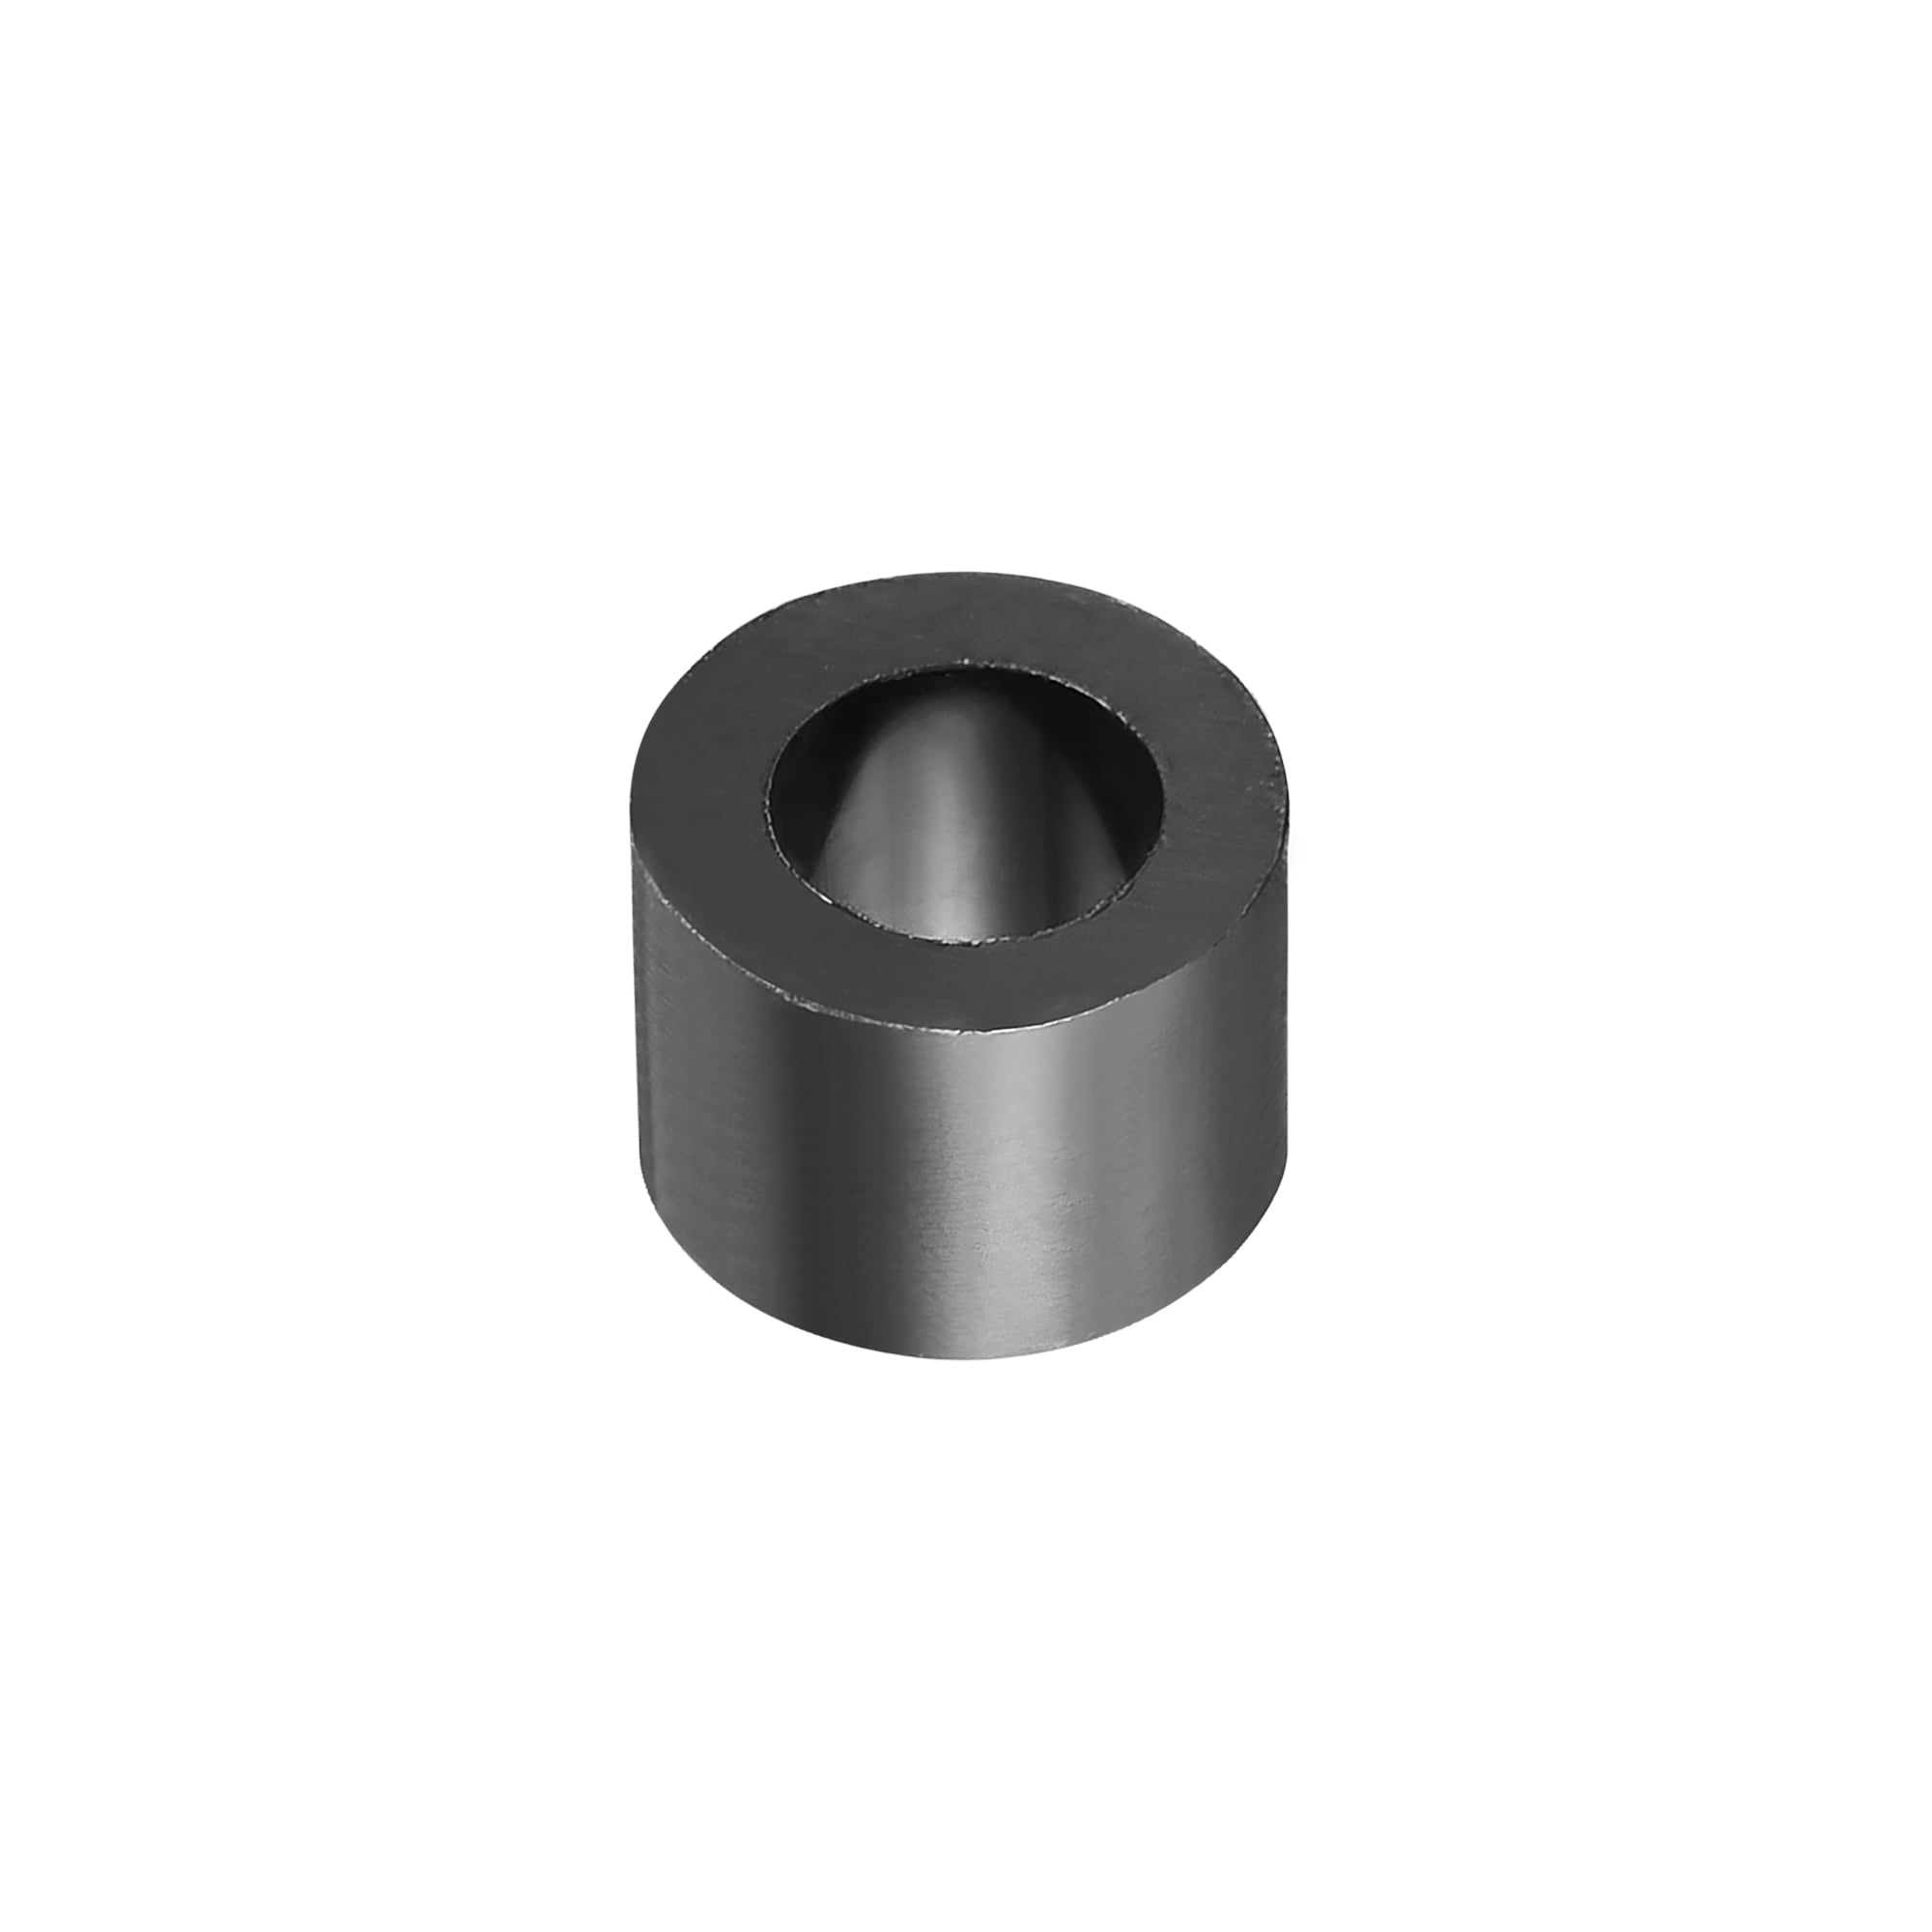 Nylon Round Spacer Washer 4.2mmx7mmx5mm Unthreaded for M4 Screws Black 100Pcs 